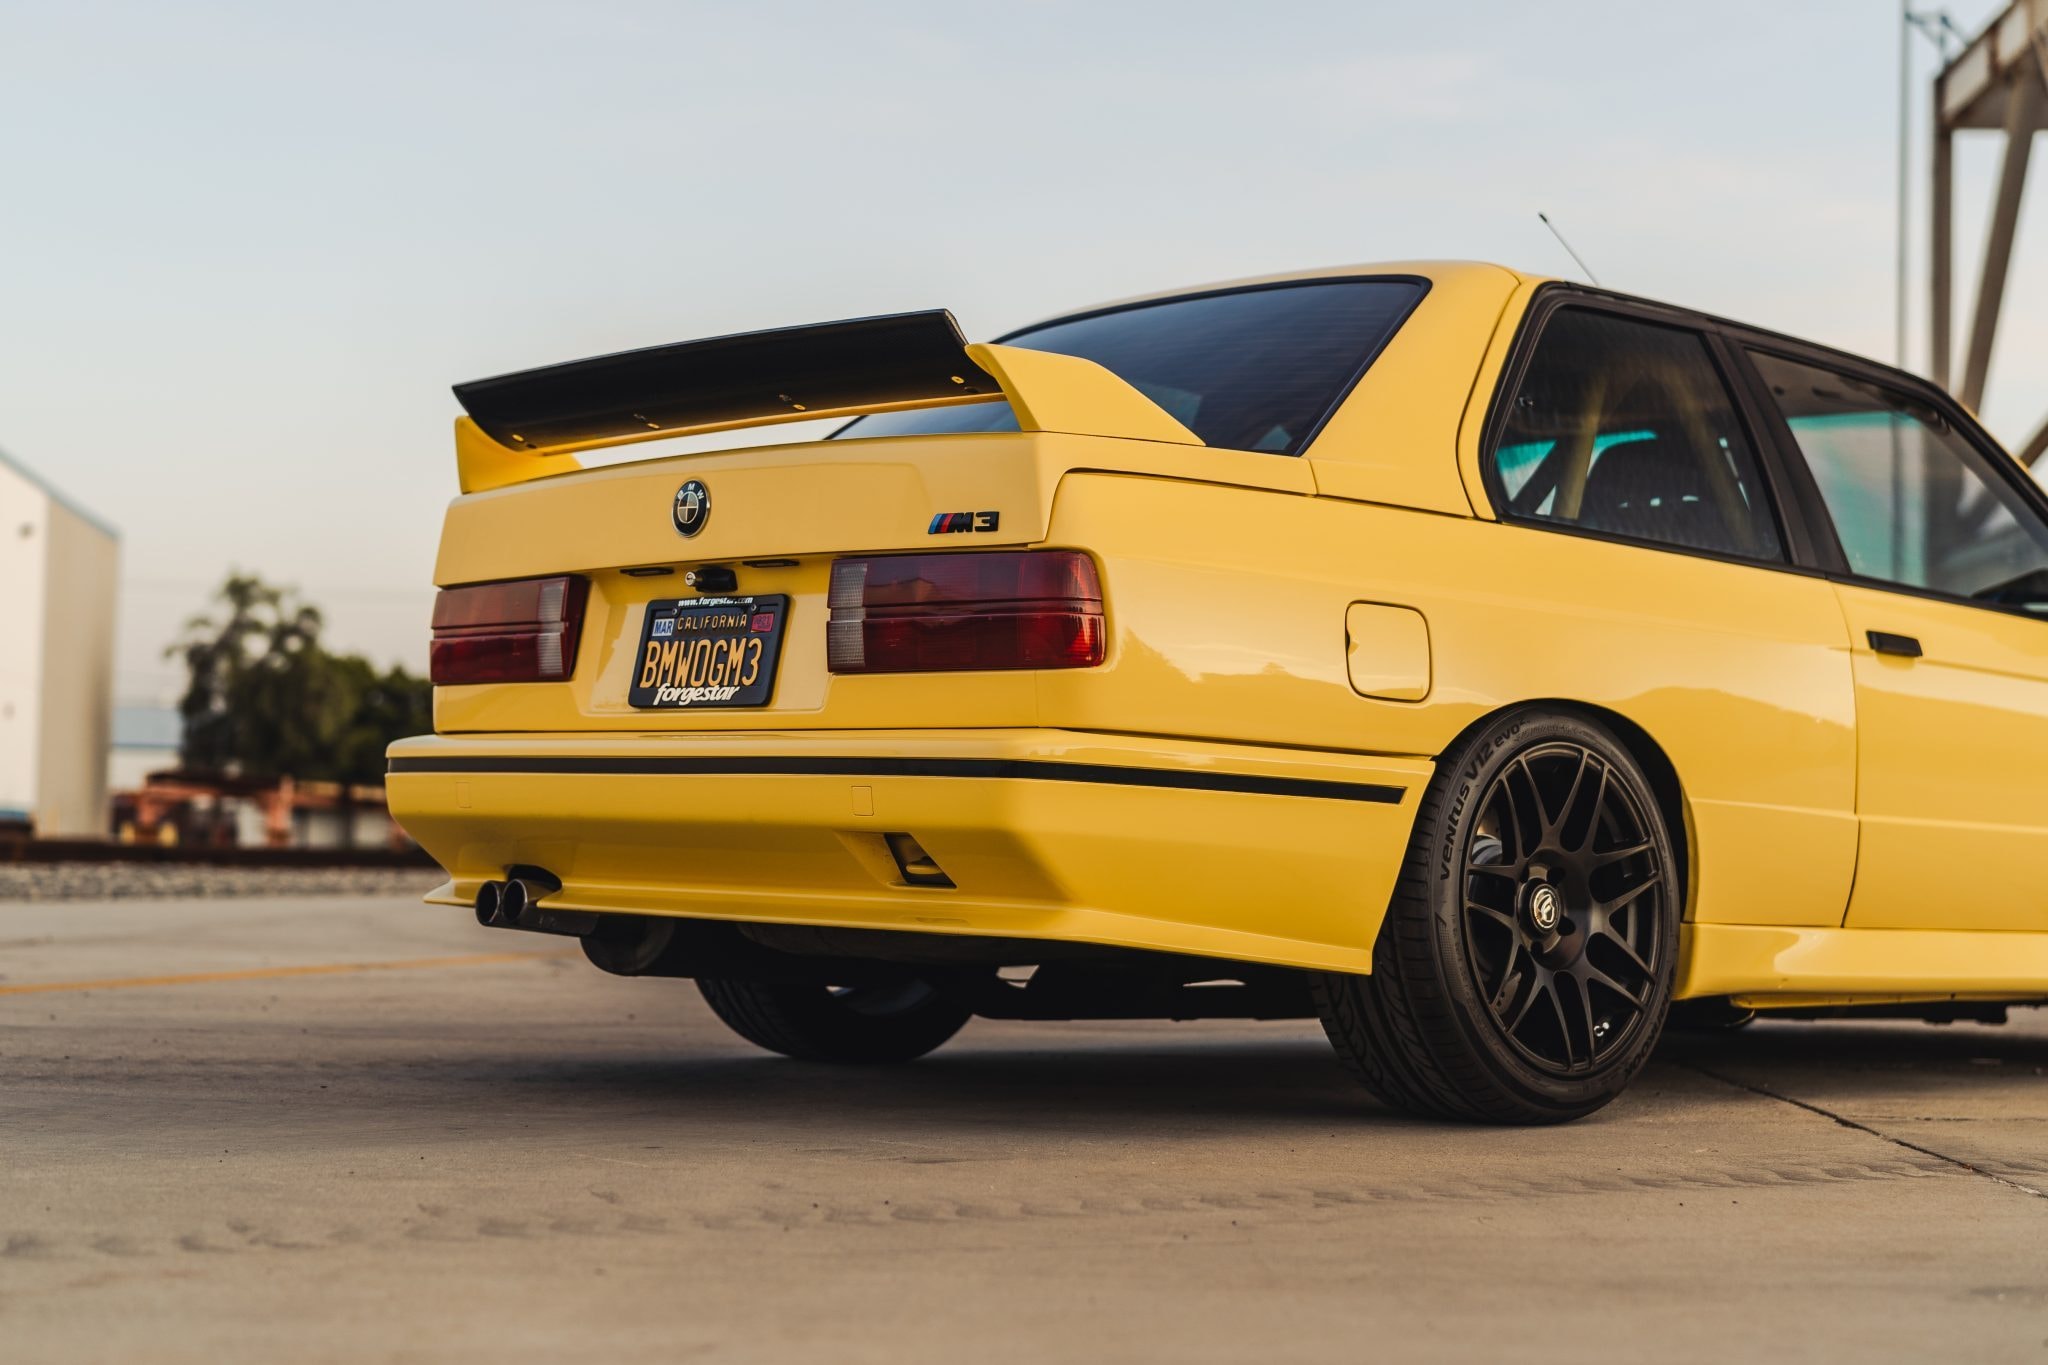 1989 年式樣 BMW E30 M3 改裝車款正式展開拍賣